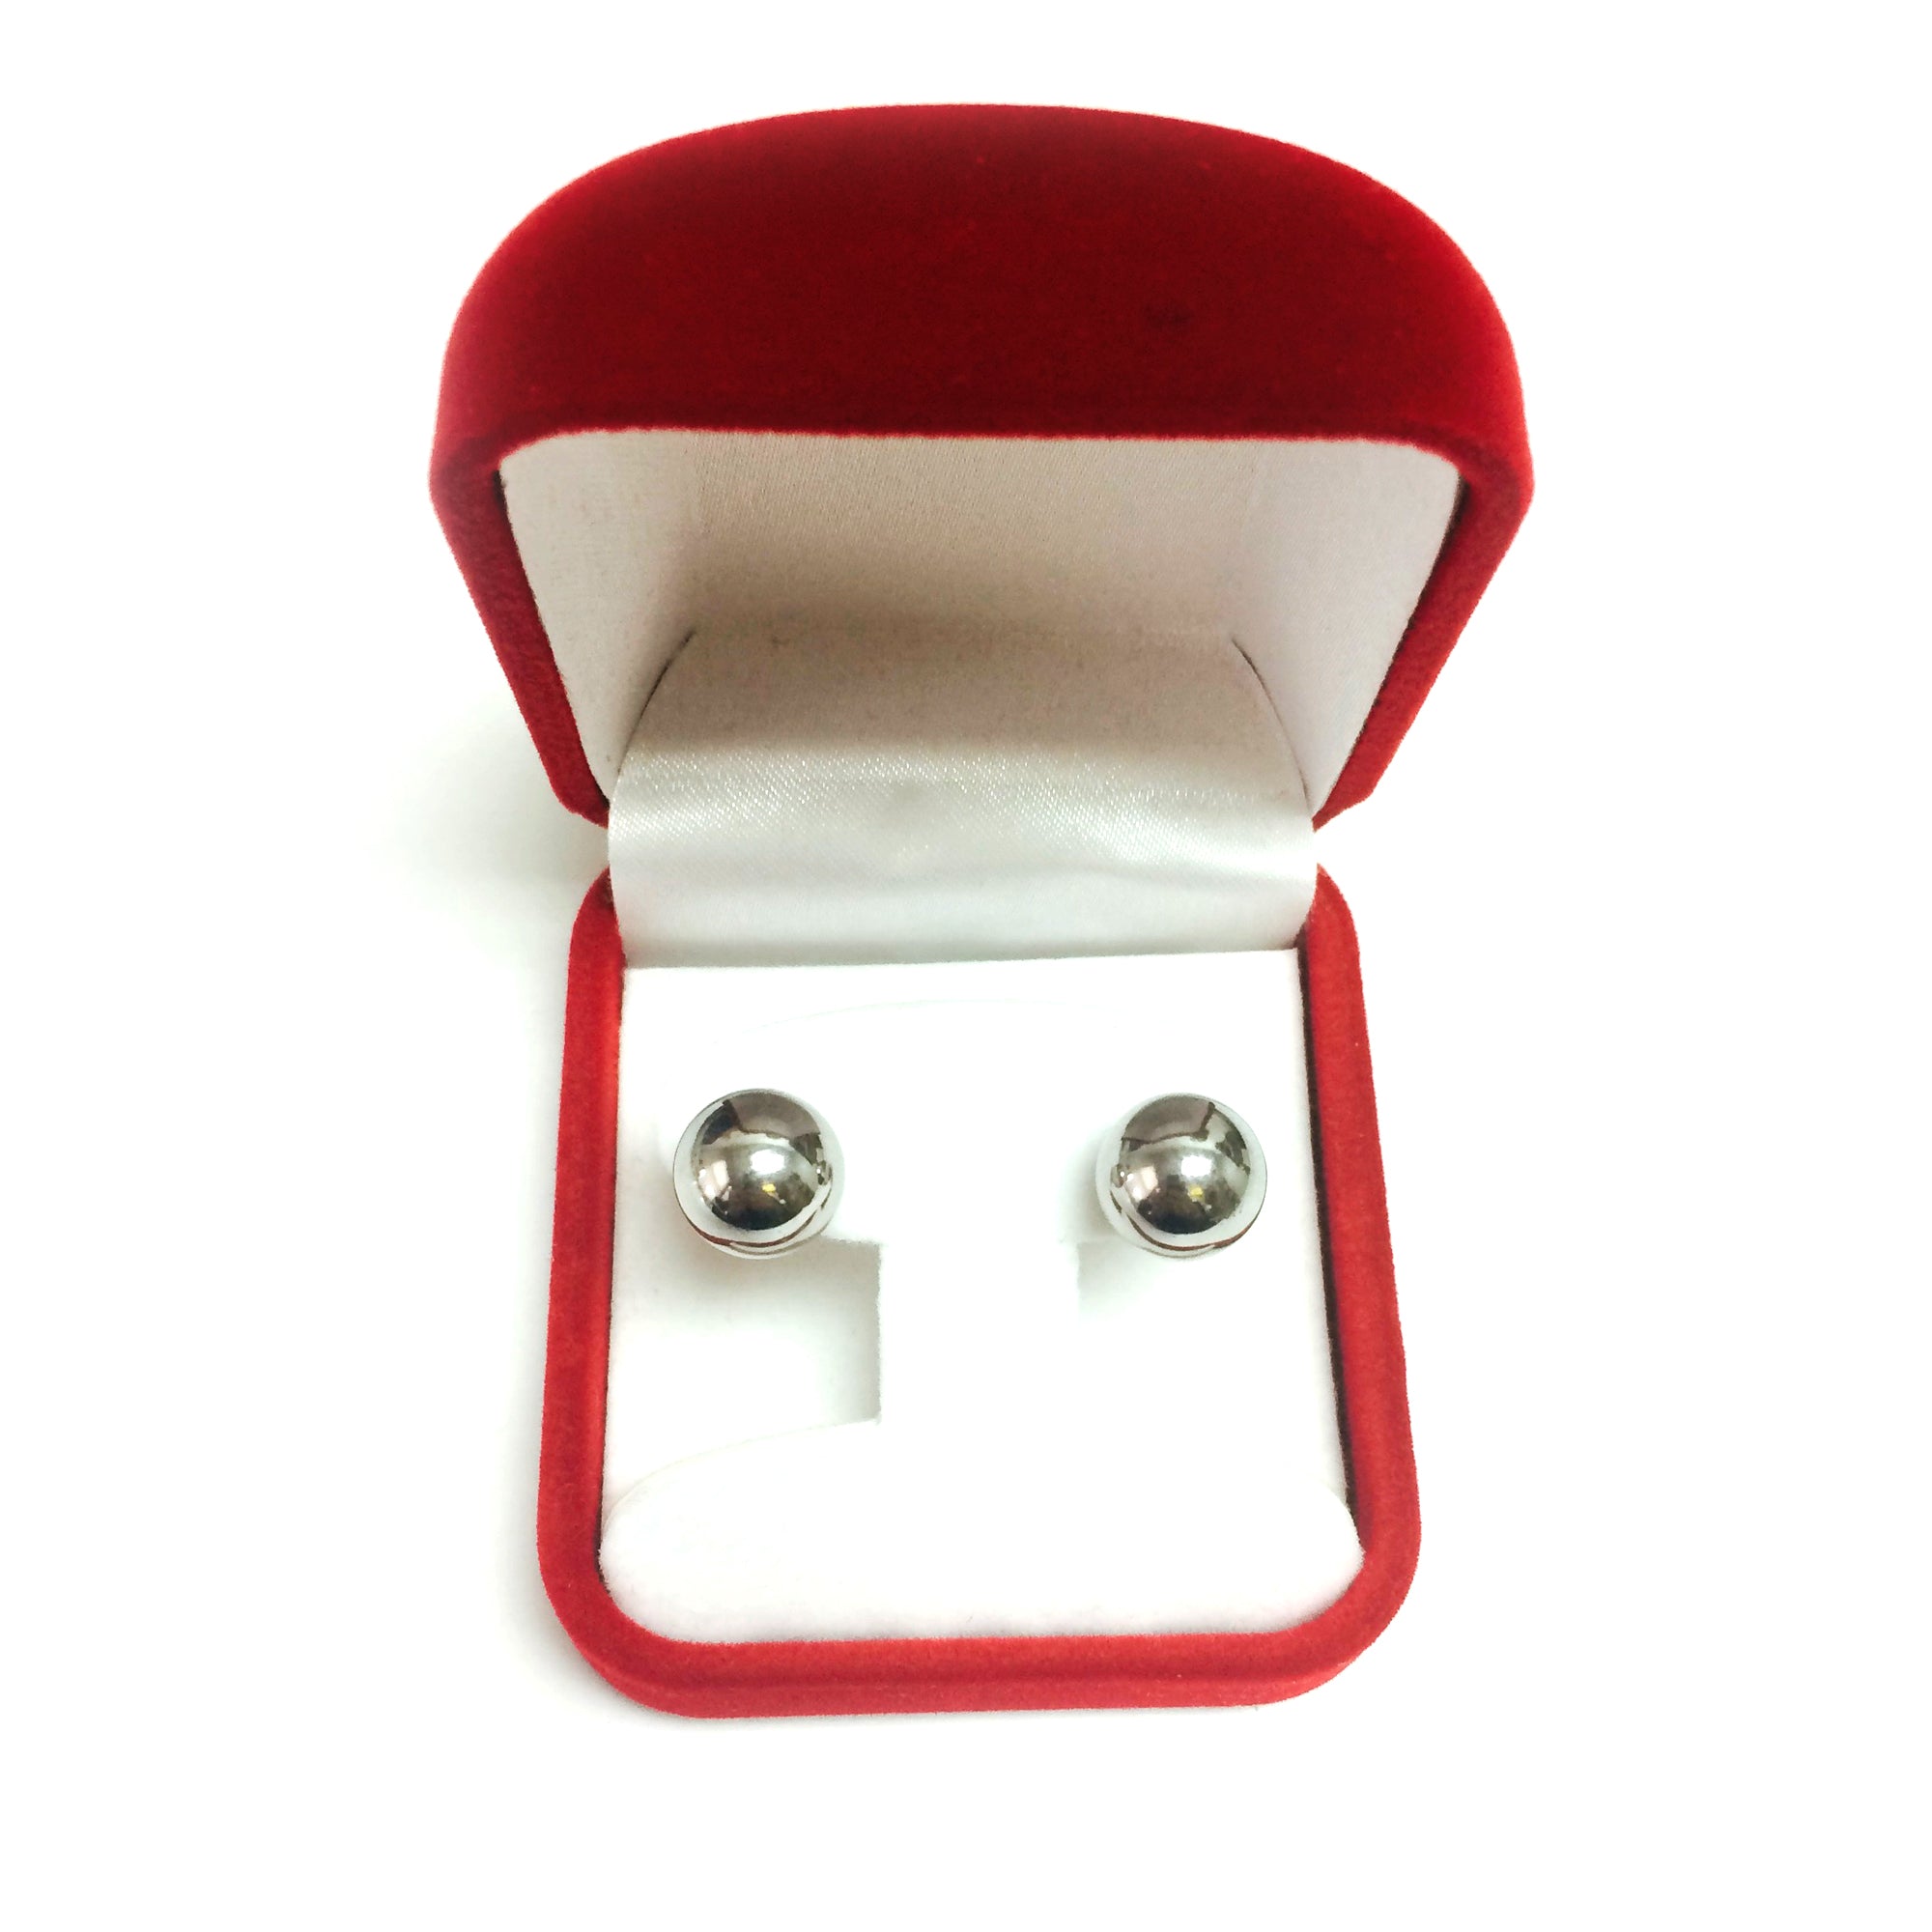 14K White Gold Ball Stud Earrings fine designer jewelry for men and women